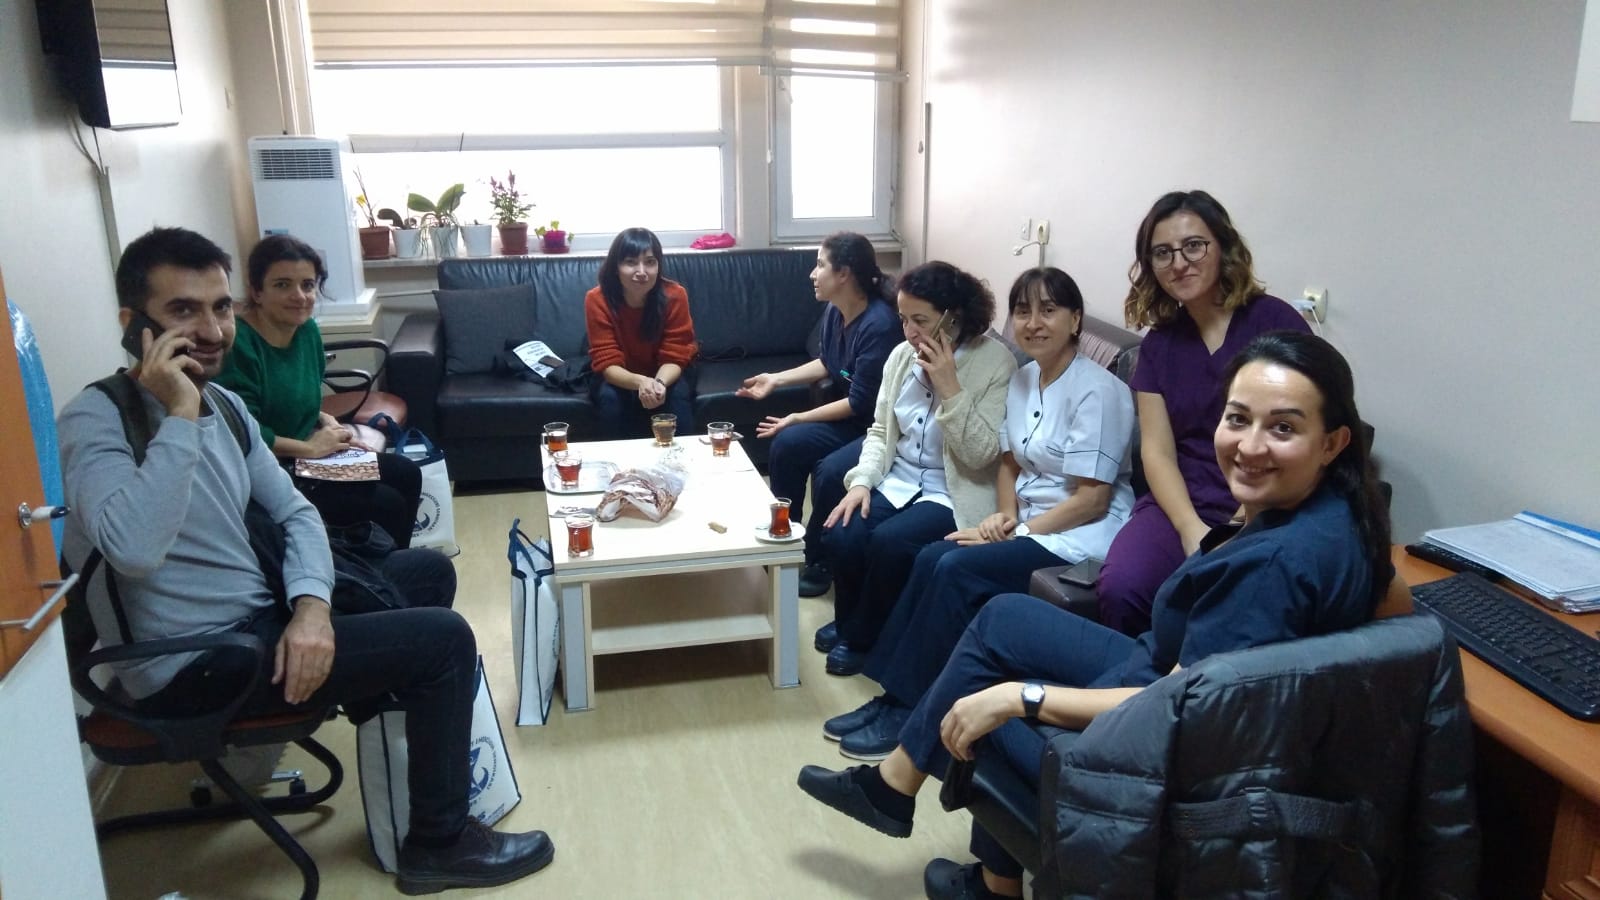 Şişli Etfal Hastanesi’nde 22 Aralık İstanbul KESK Bölge Mitingi Çalışması Yaptık